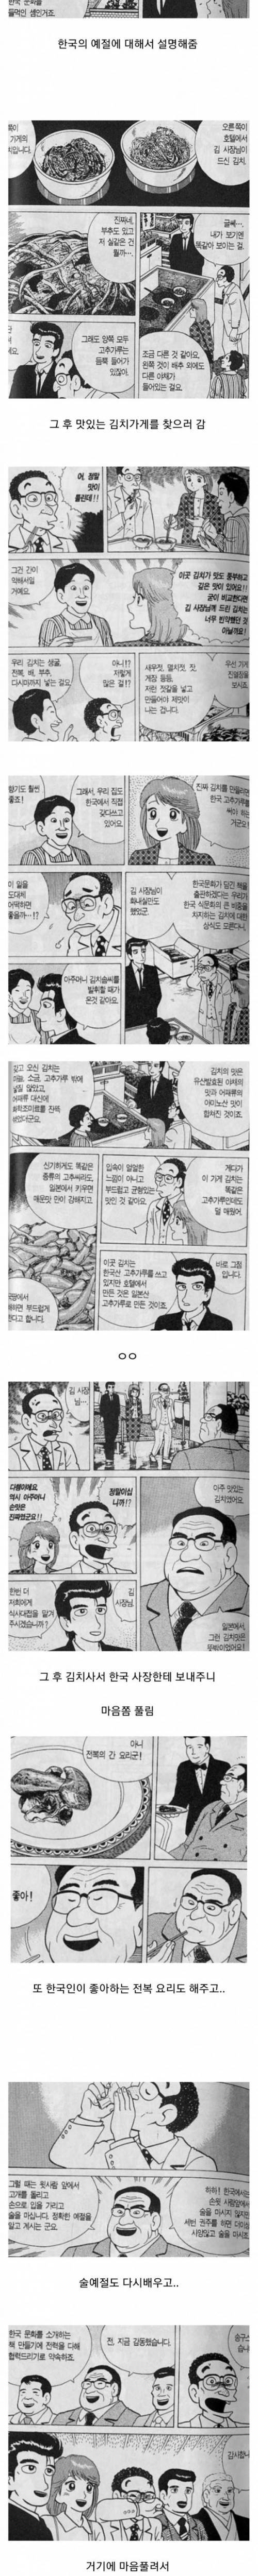 [스압] 일본만화 속 한국의 食문화.jpg